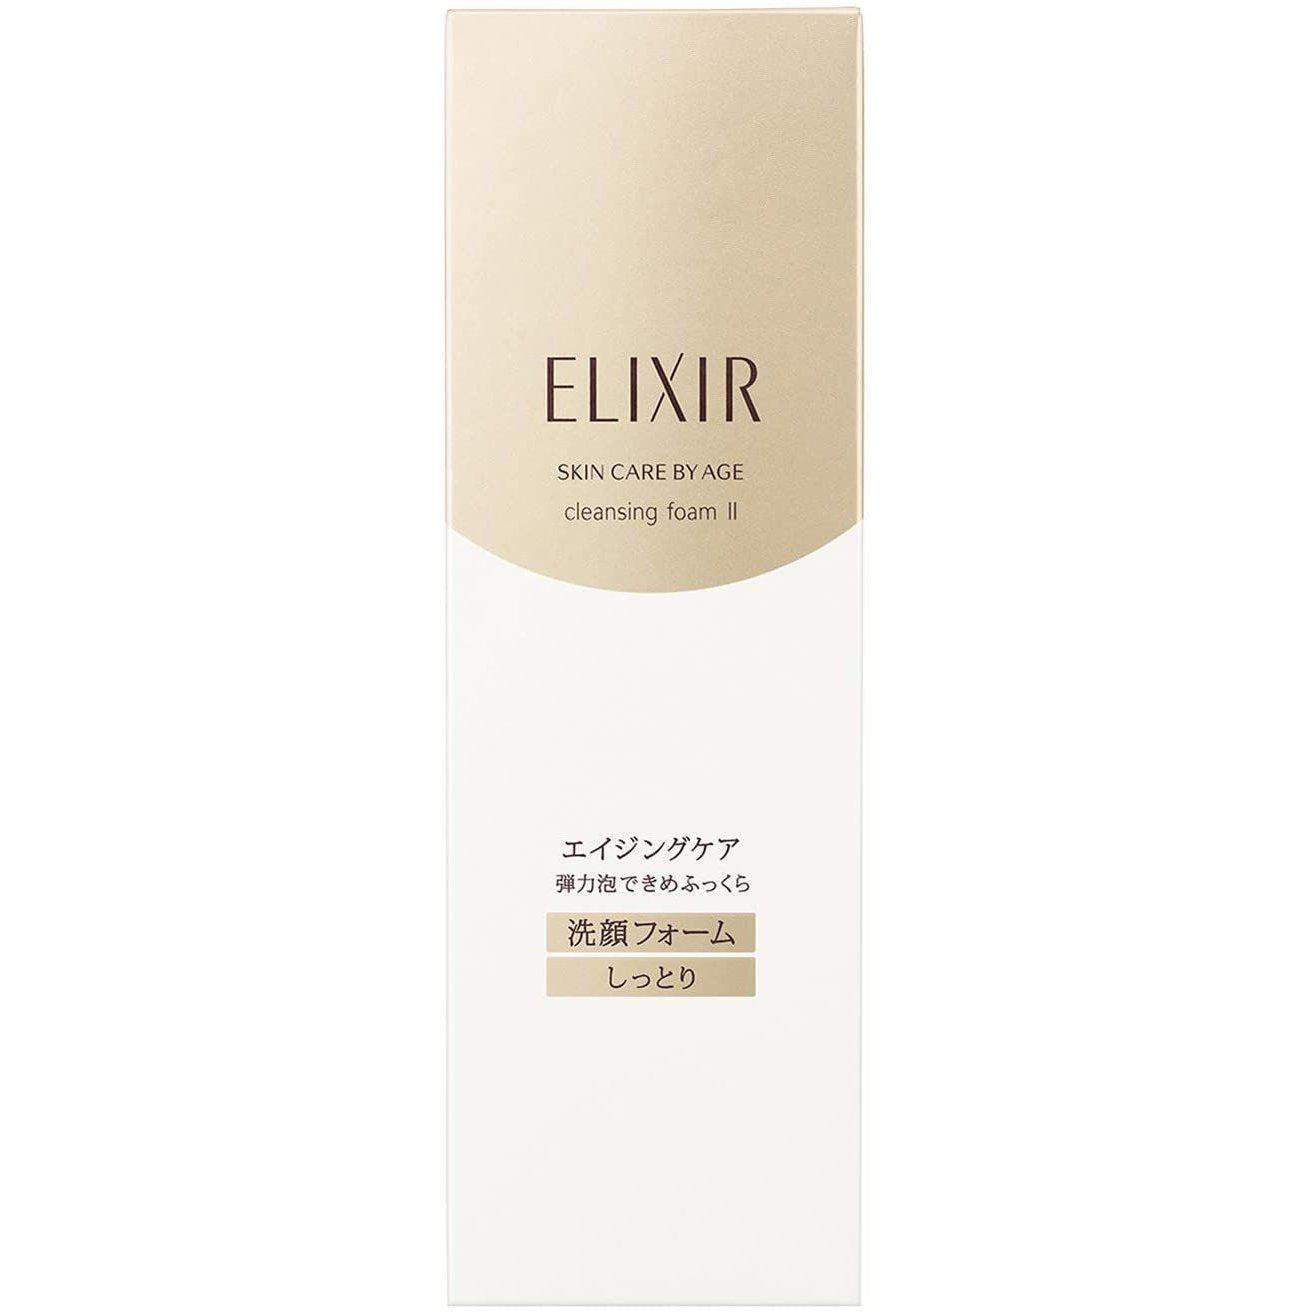 Shiseido Elixir Cleansing Foam II Moist 145g